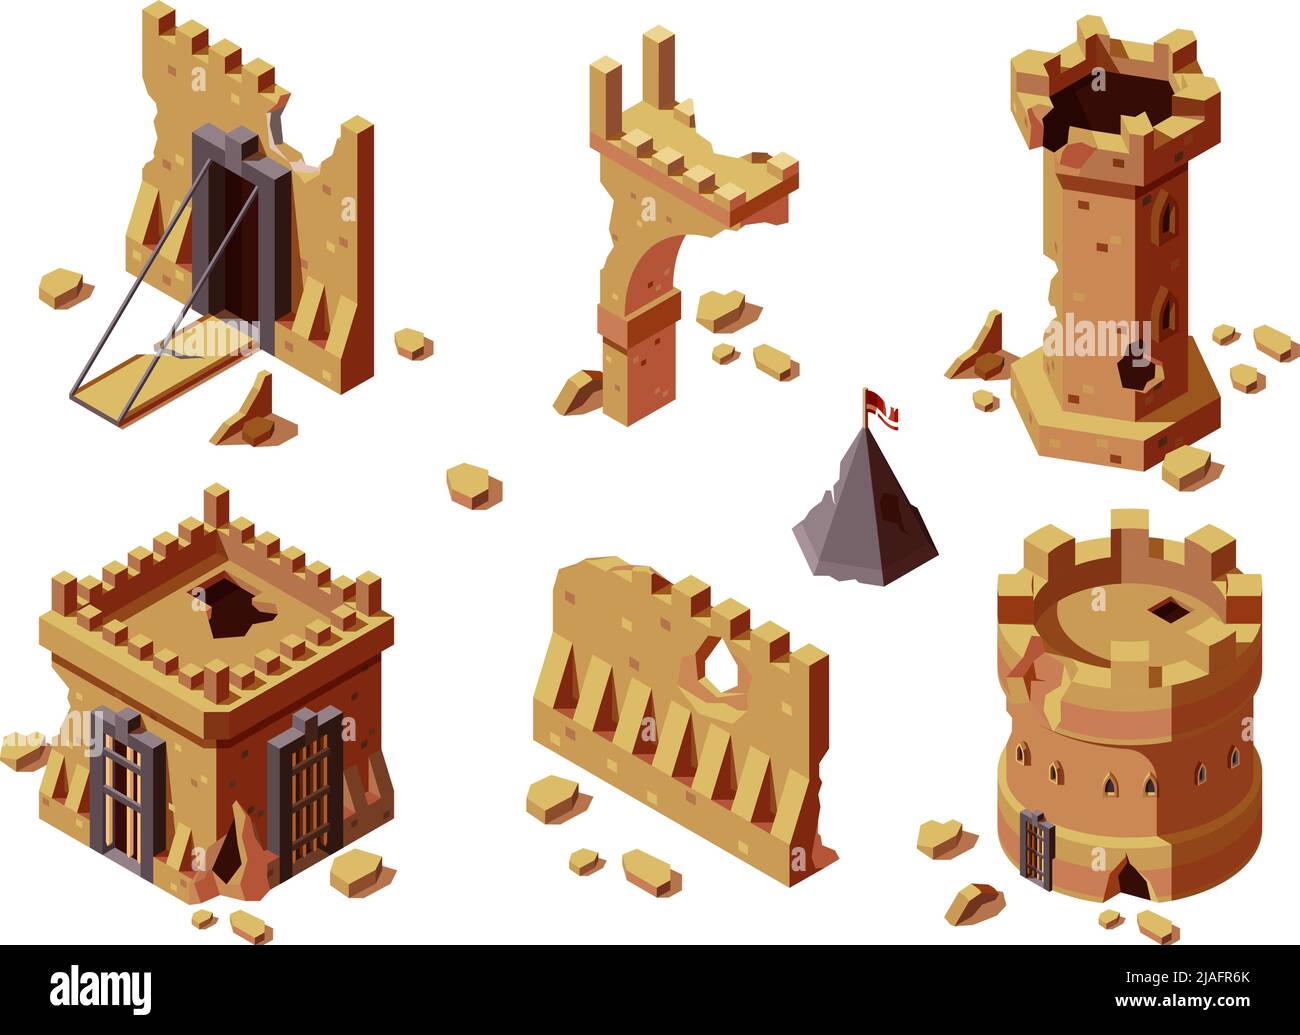 Mittelalterliche Gebäude. Krieg beschädigt historischen Konstruktionen Spiel 3D isometrische grish Vektor-Vorlagen Stock Vektor